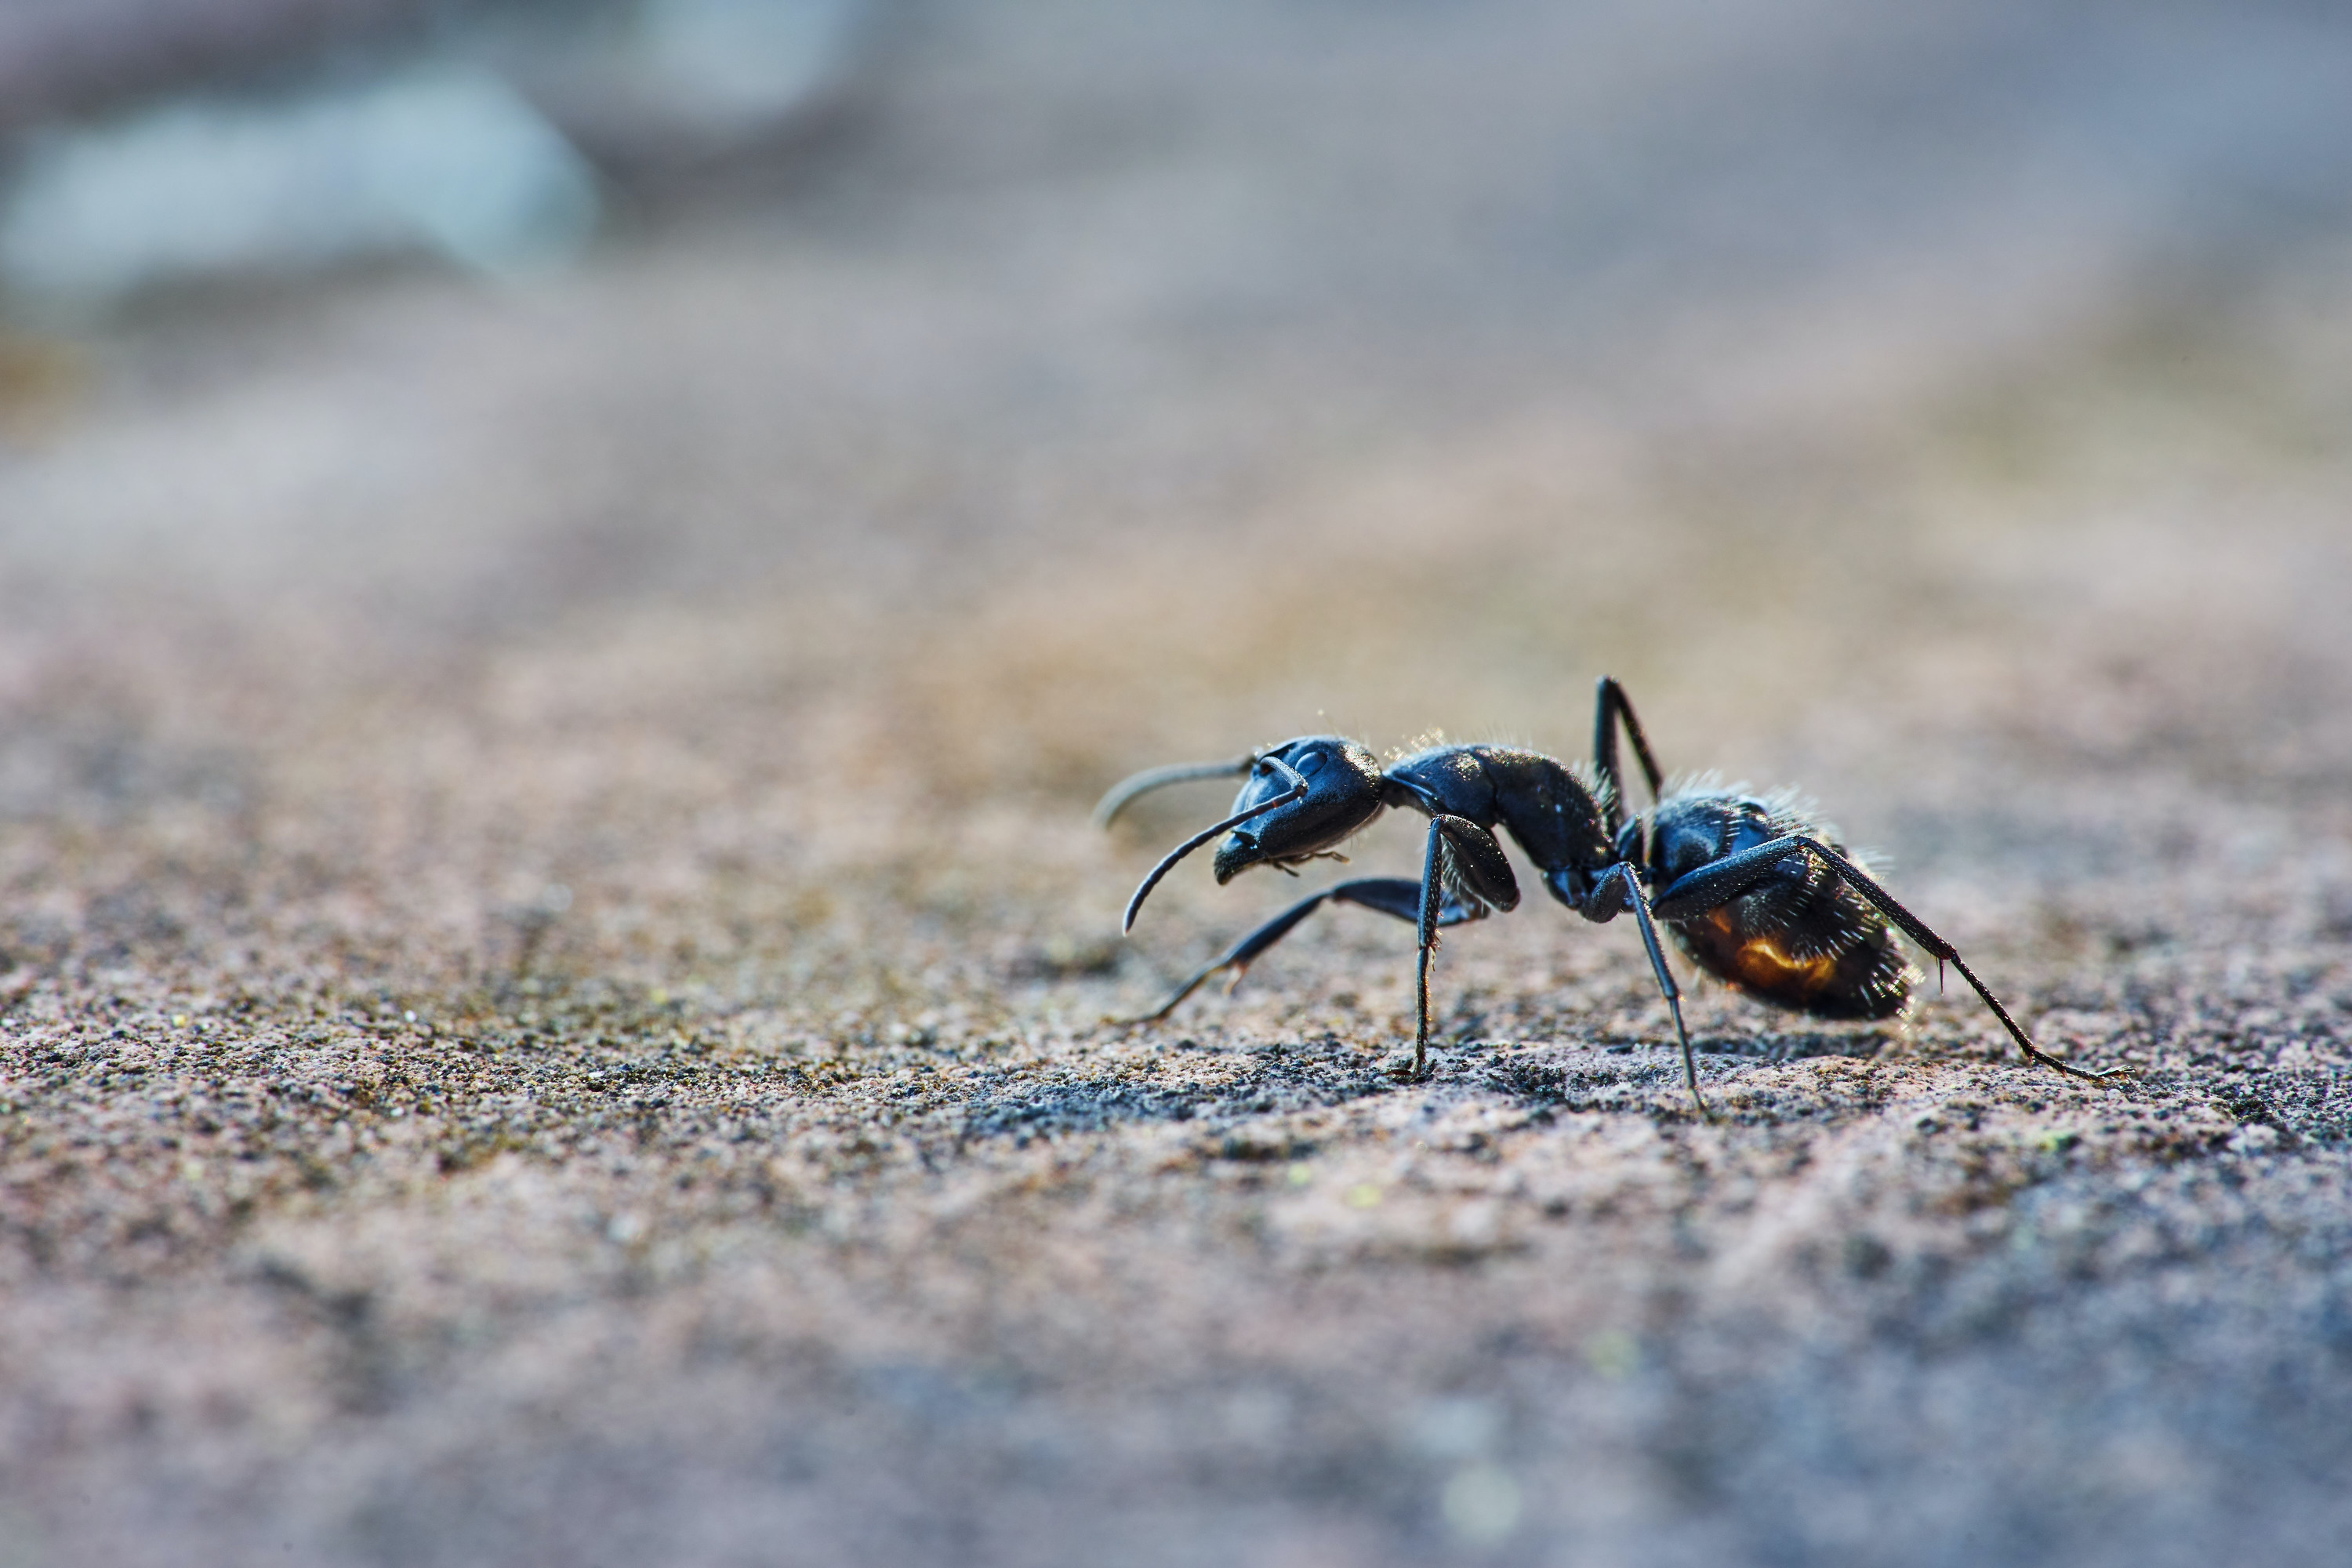 Ядовитая приманка с бором — очень дешевый и эффективный способ борьбы с муравьями